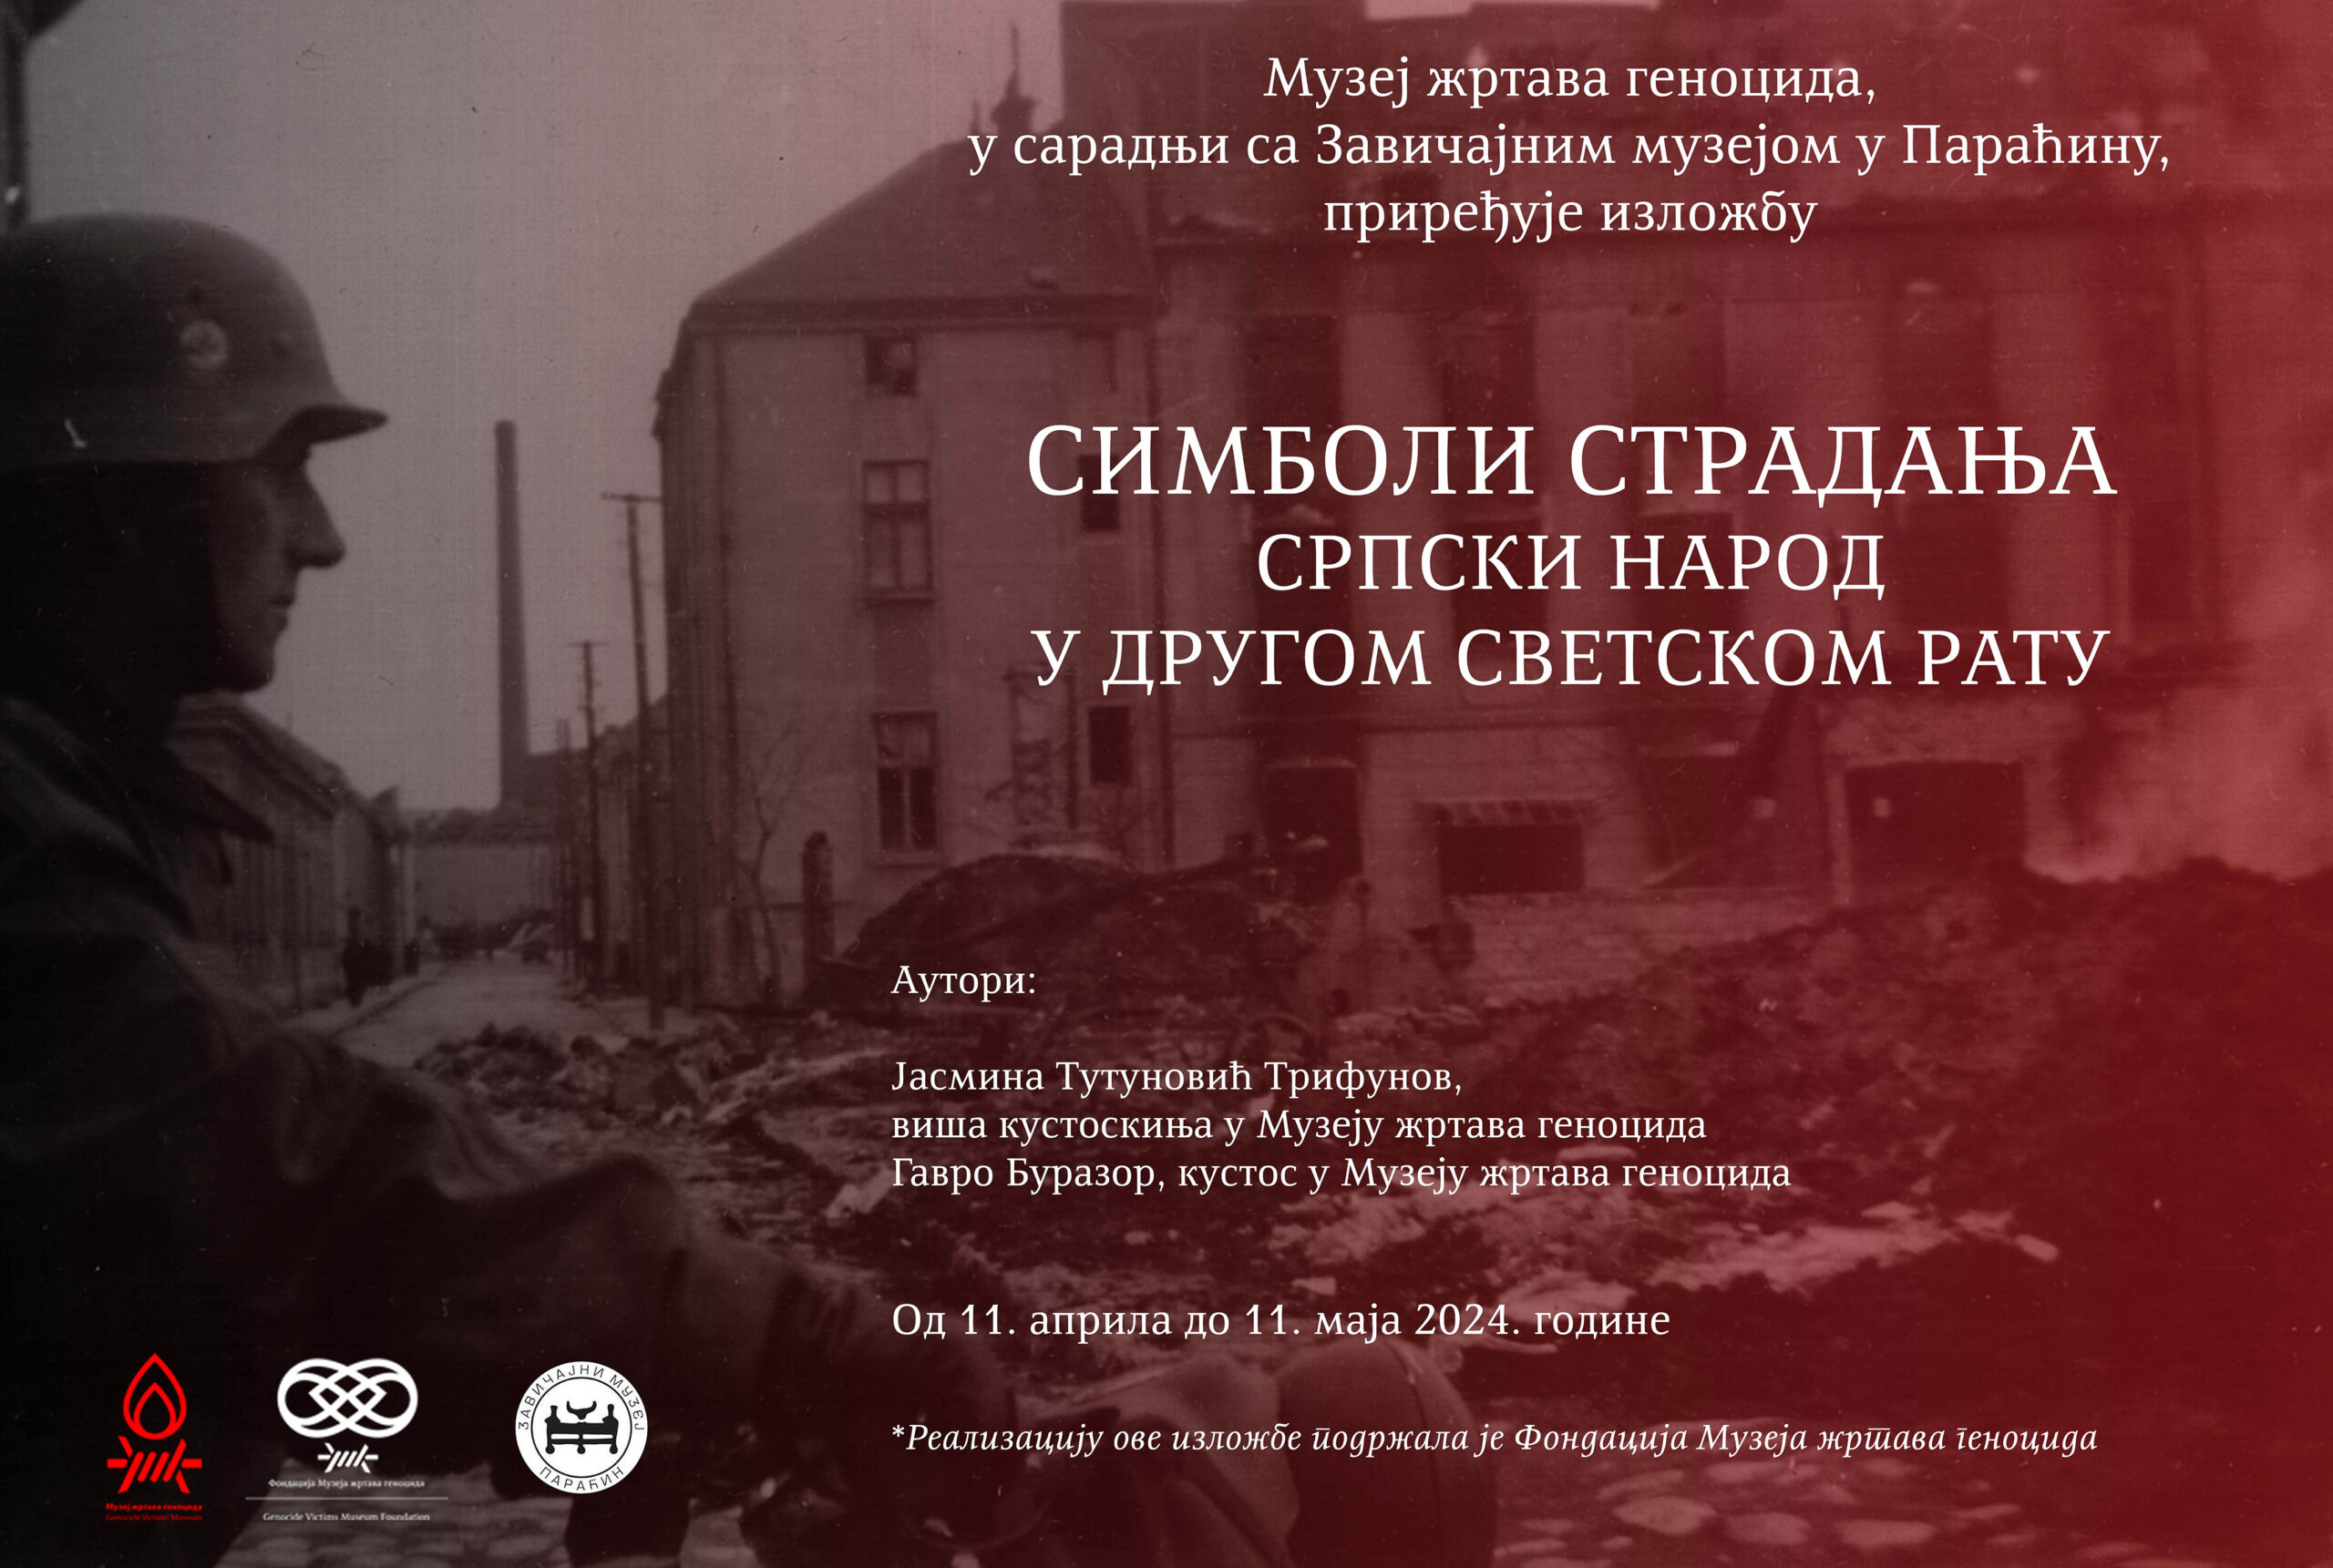 Izložba „Simboli stradanja, srpski narod u Drugom svetskom ratu“ u petak na gradskom keju kod RISC-a